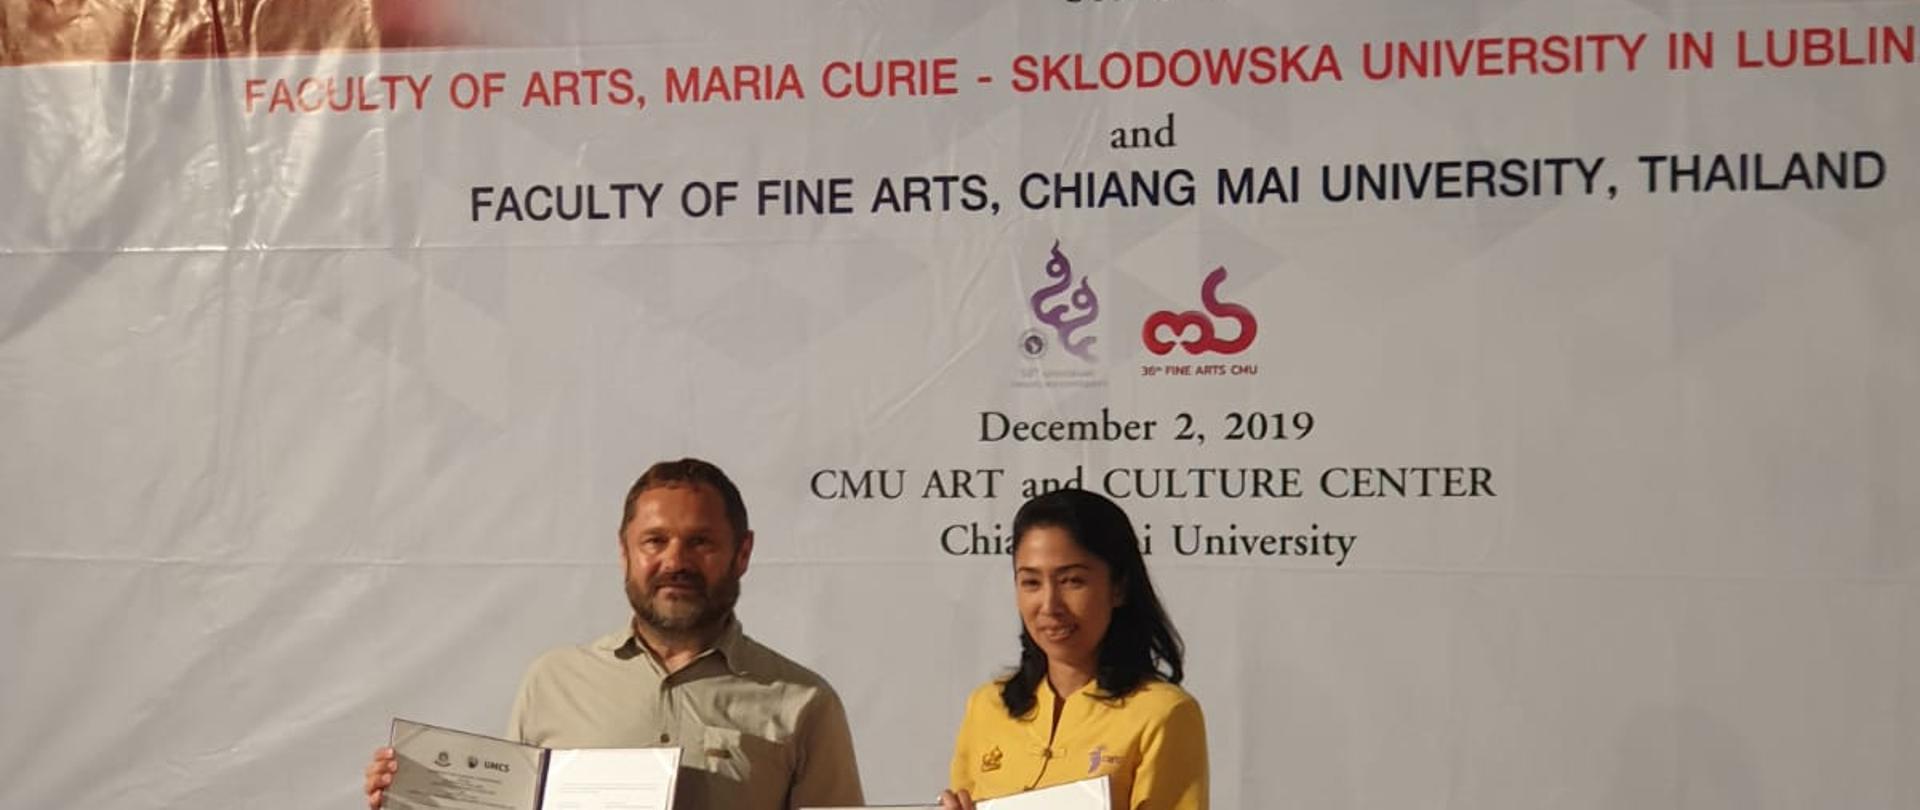 Podpisanie umowy o współpracy akademickiej między UMCS a Uniwersytetem Chiang Mai